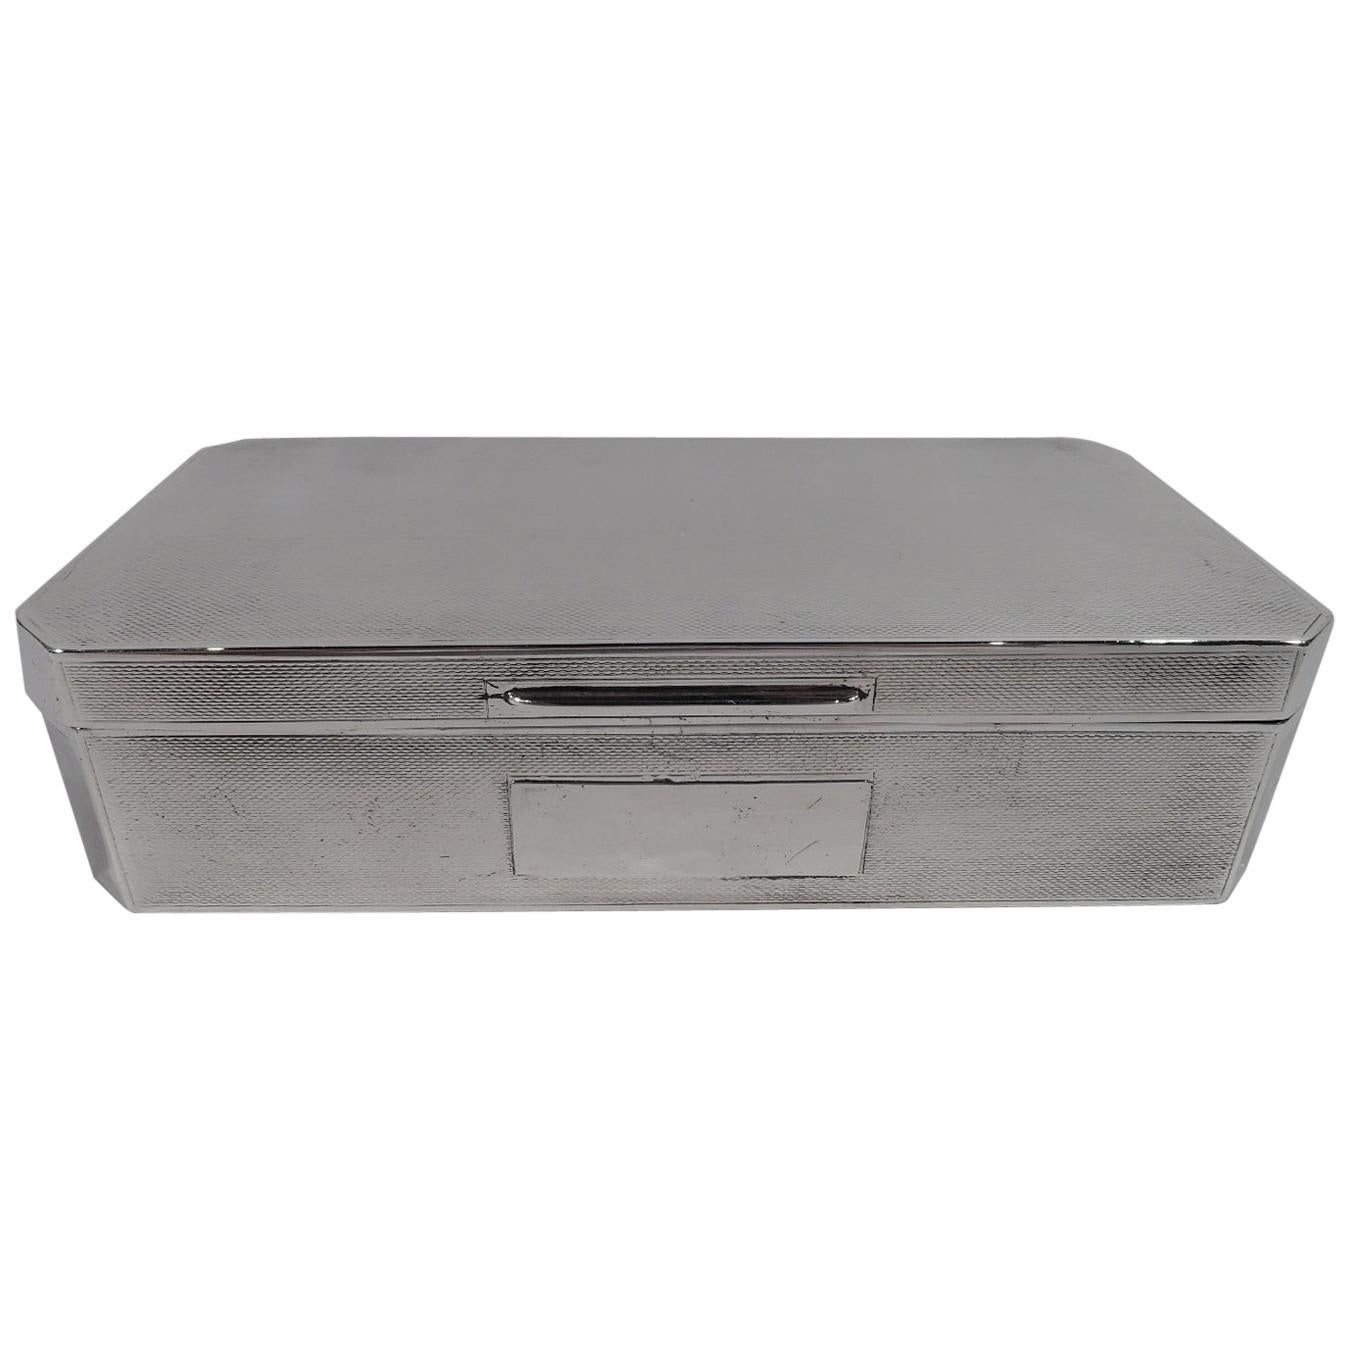 English Art Deco Sterling Silver Desk Box